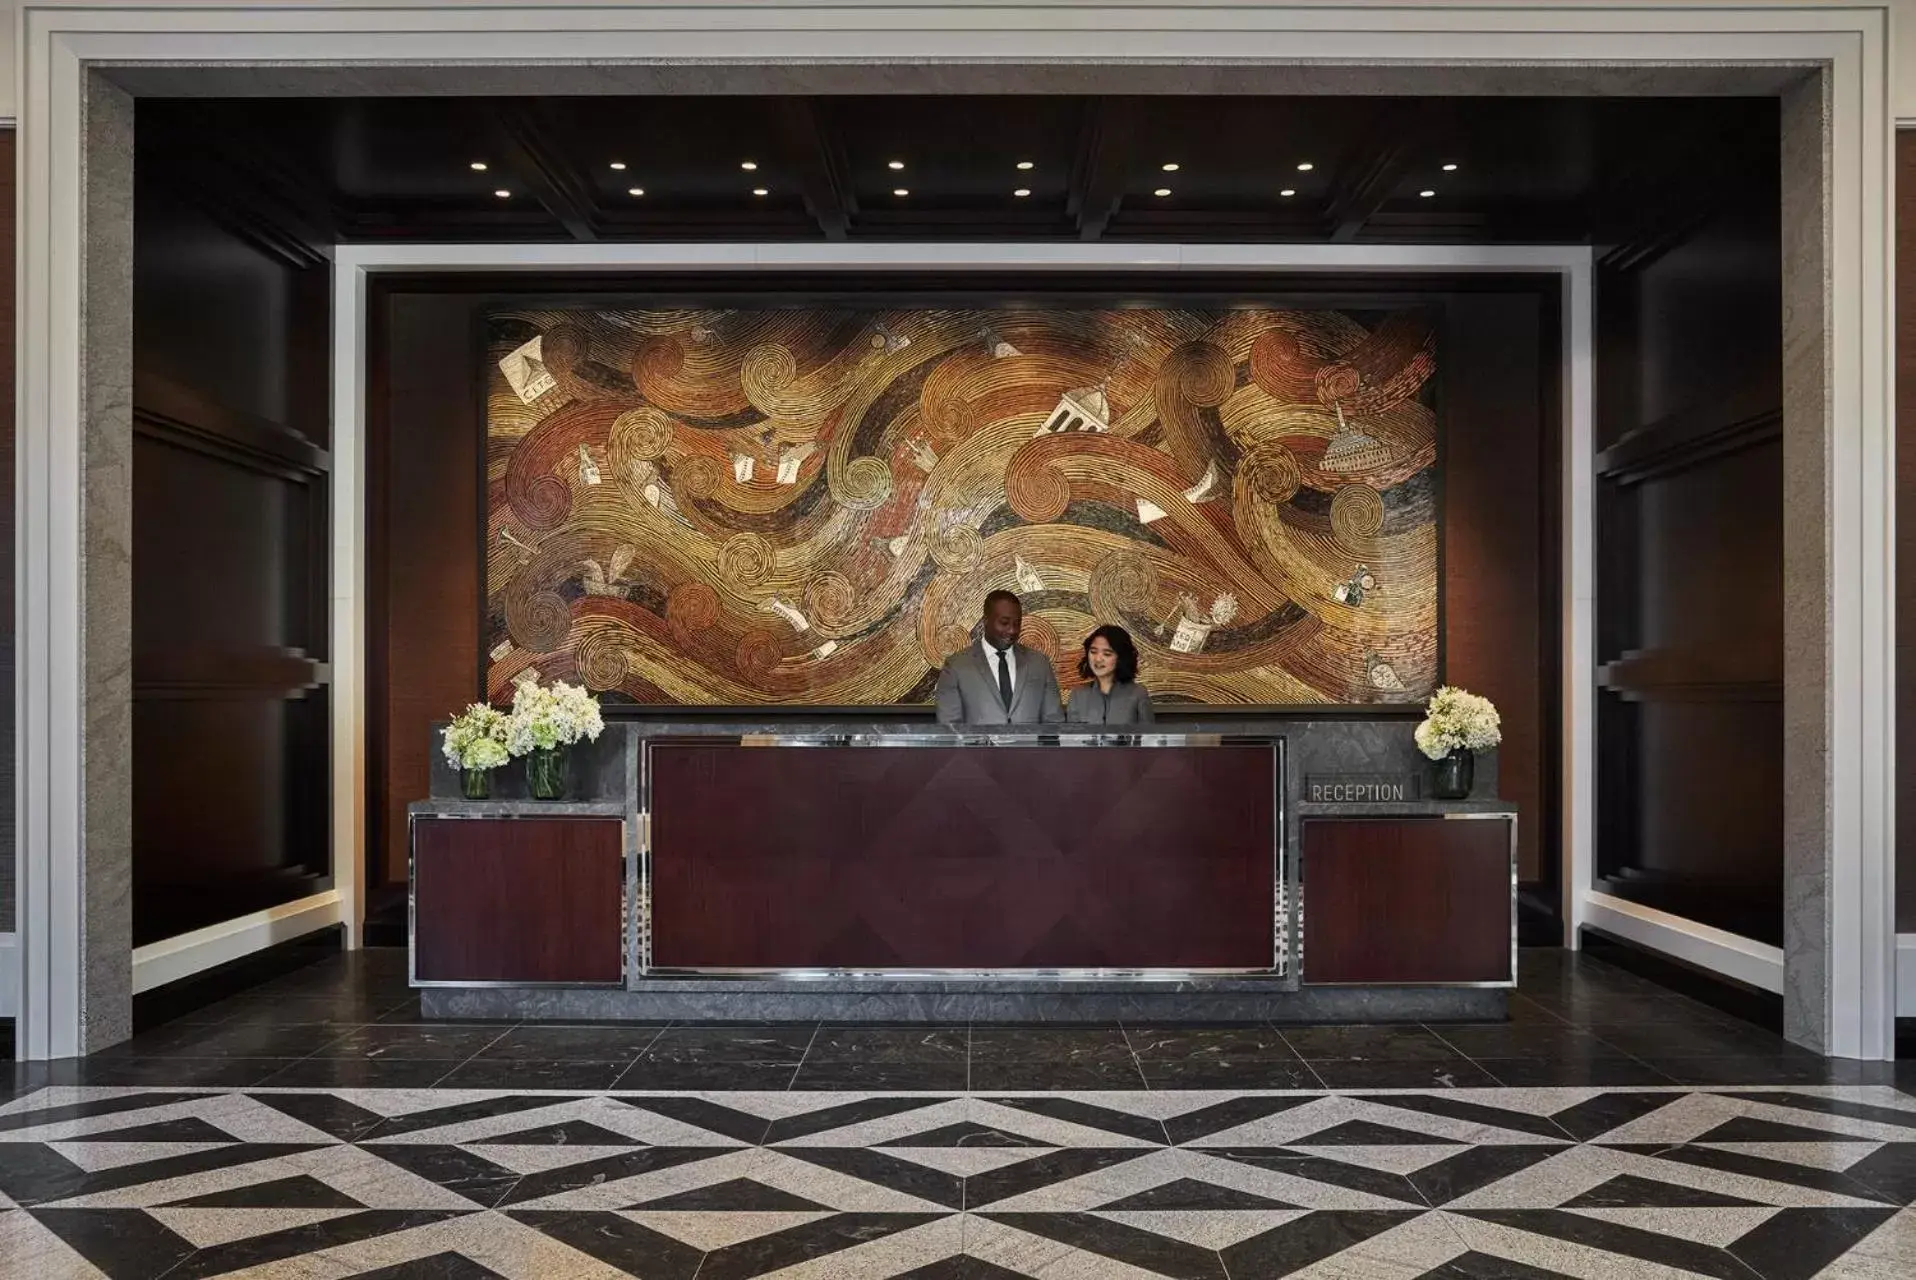 Lobby or reception, Lobby/Reception in Four Seasons Hotel One Dalton Street, Boston